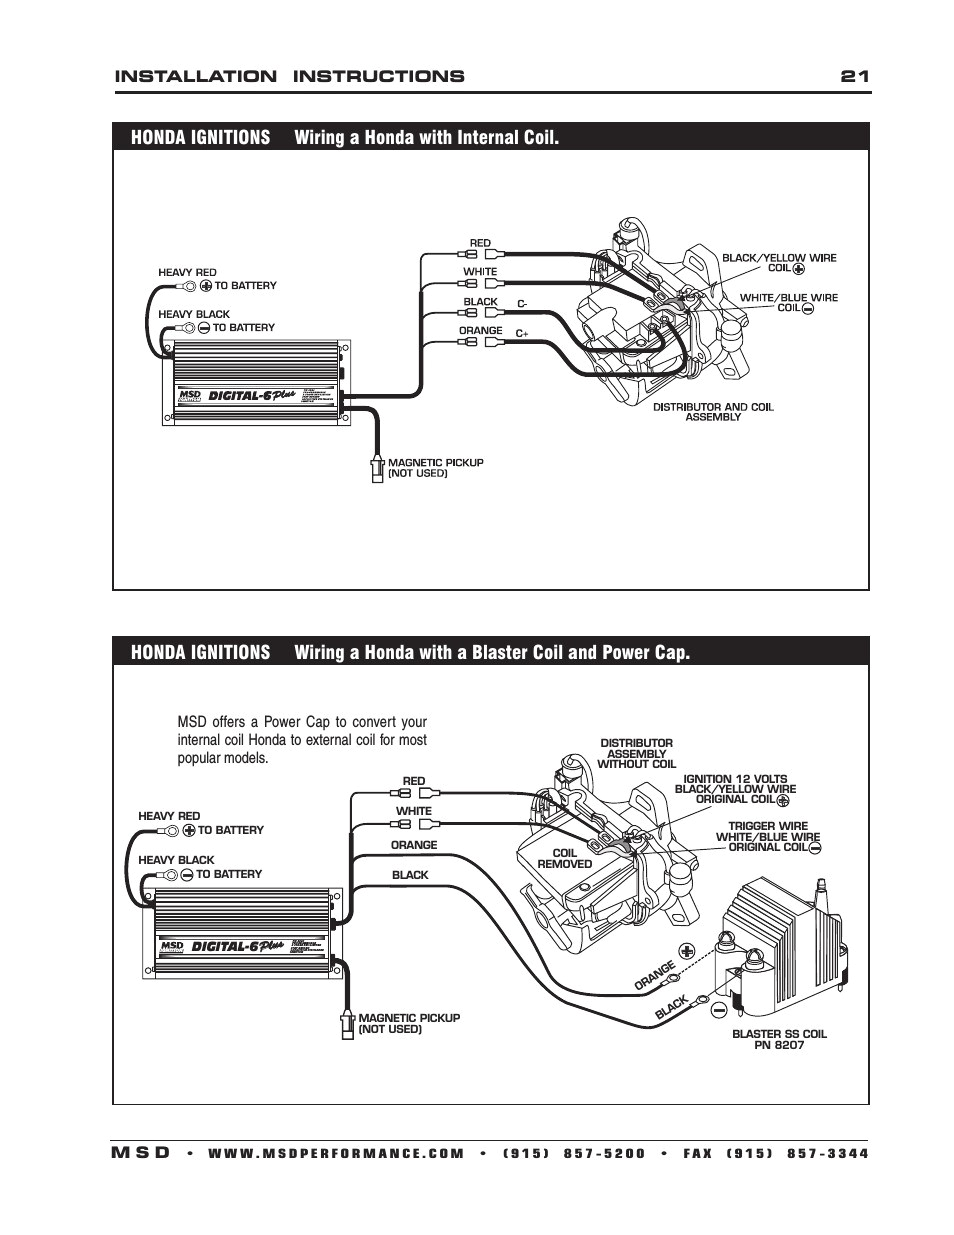 msd digital 6 wiring diagram schema diagram database digital 6 wiring diagram wiring diagram post msd